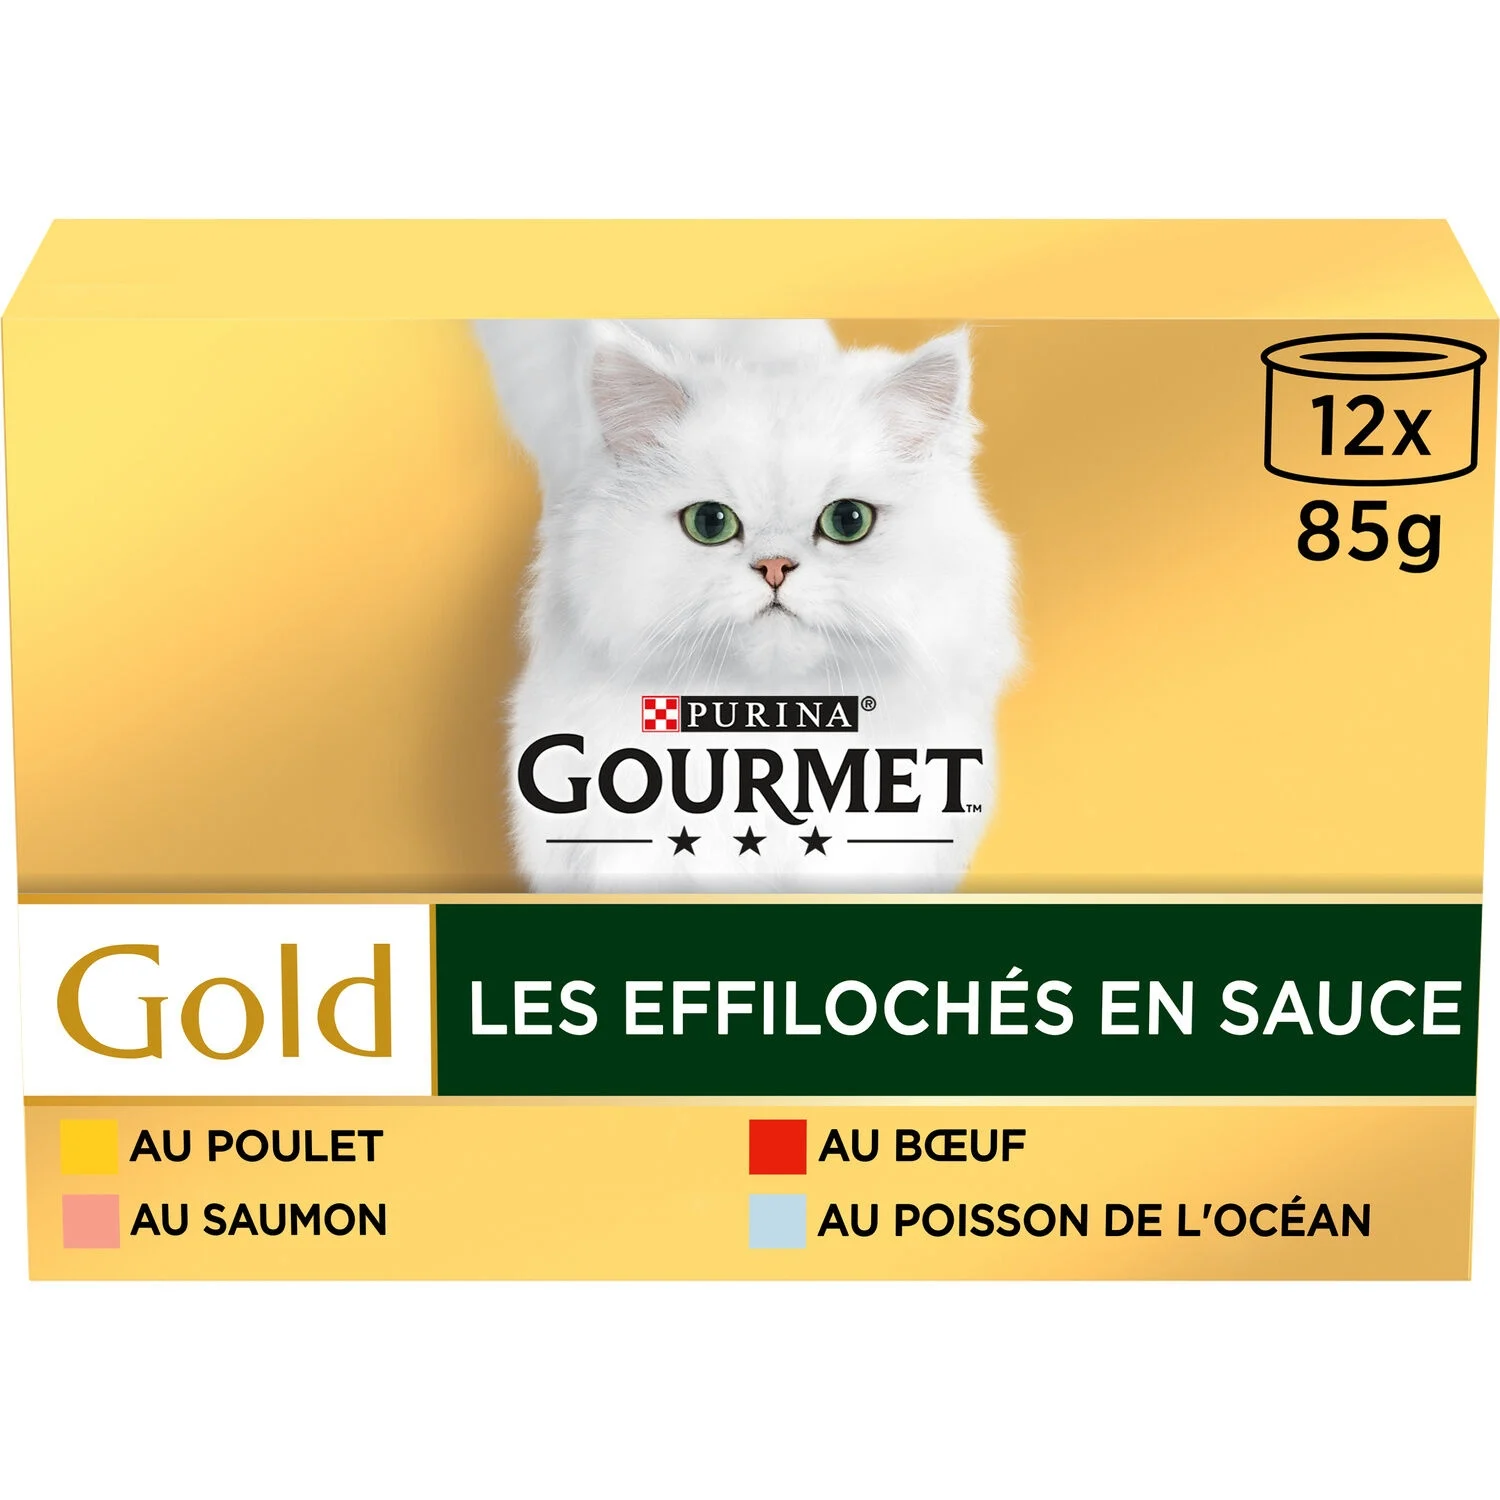 Gourmet Gold Effiloche Sce1 02